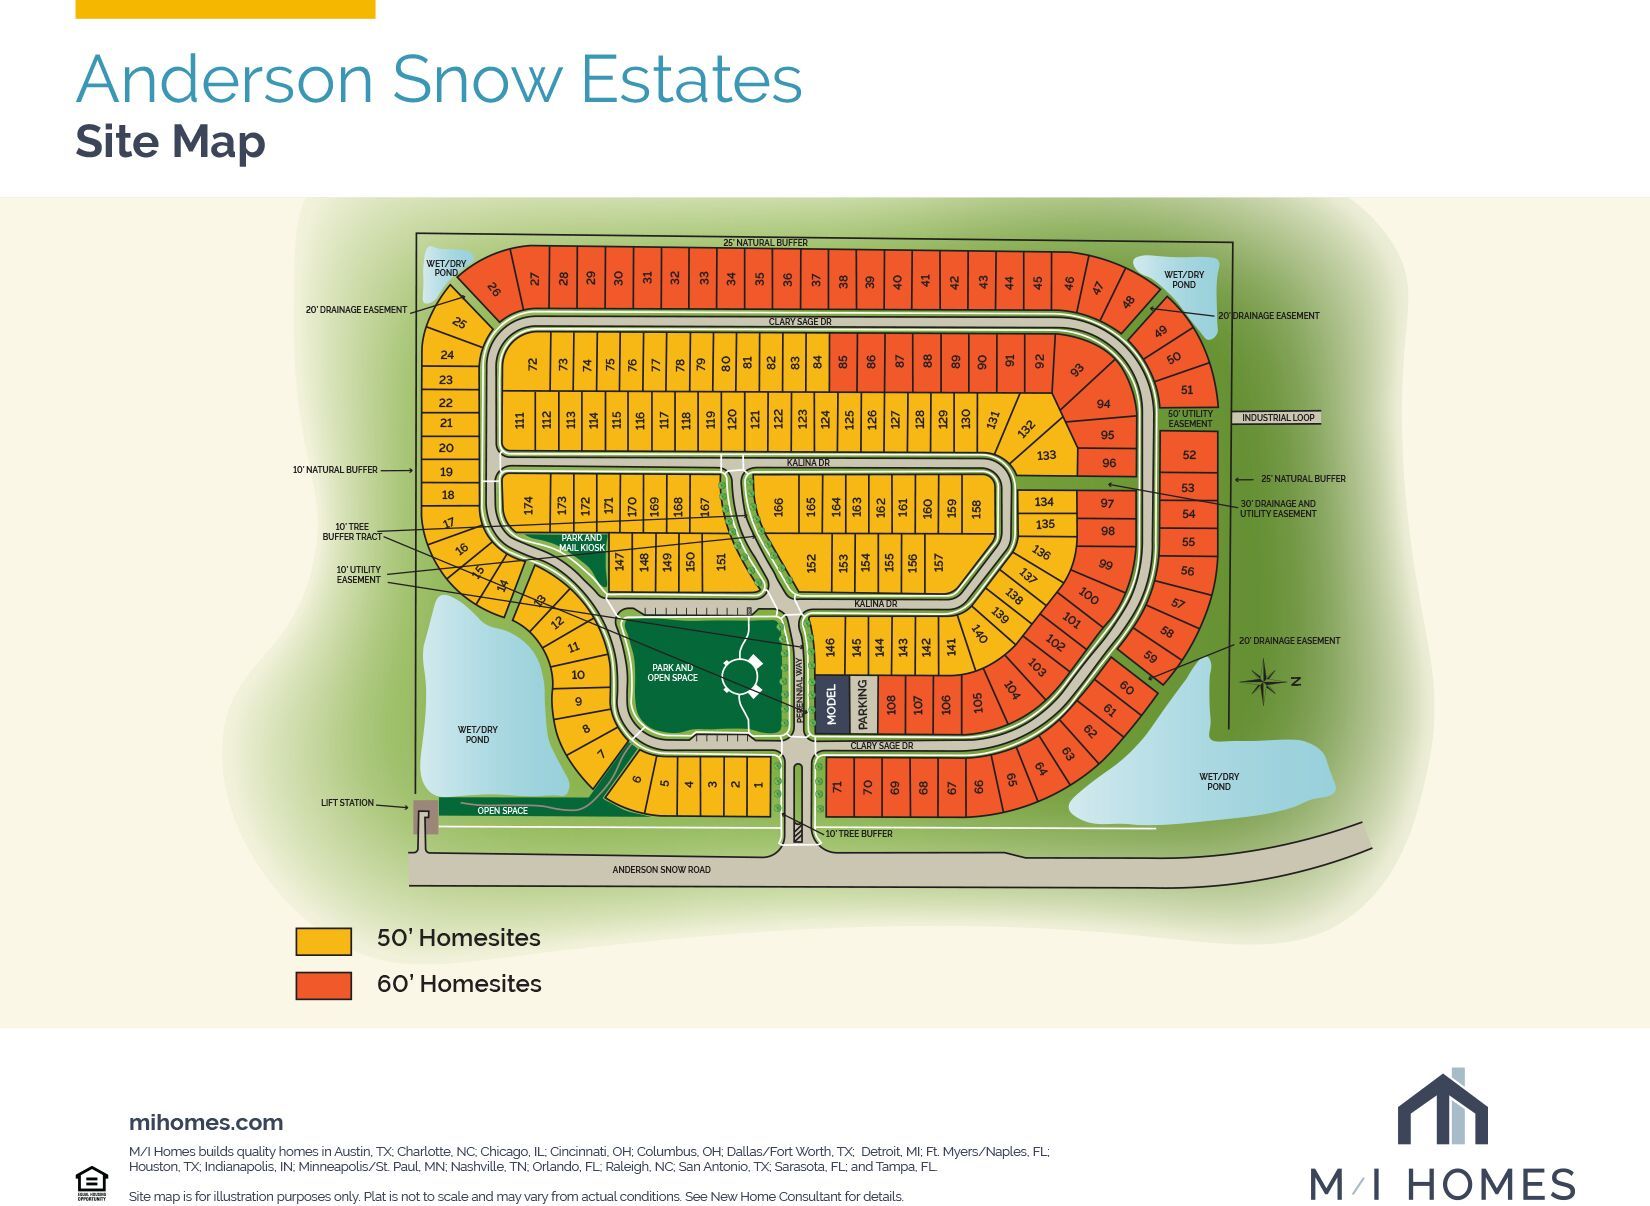 Anderson Snow Estates Siteplan